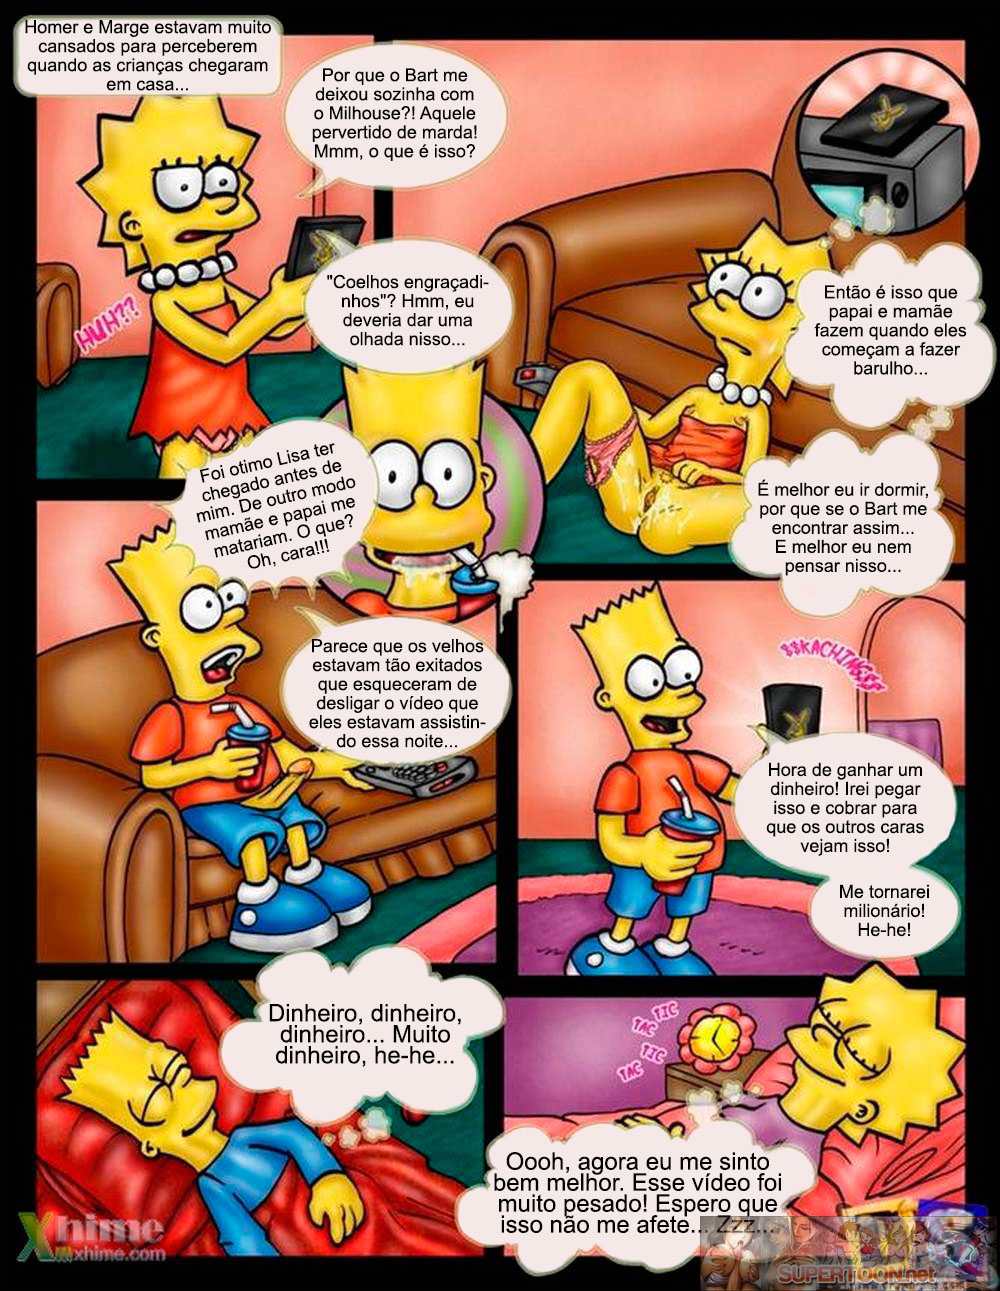 Os sonhos eróticos dos Simpsons